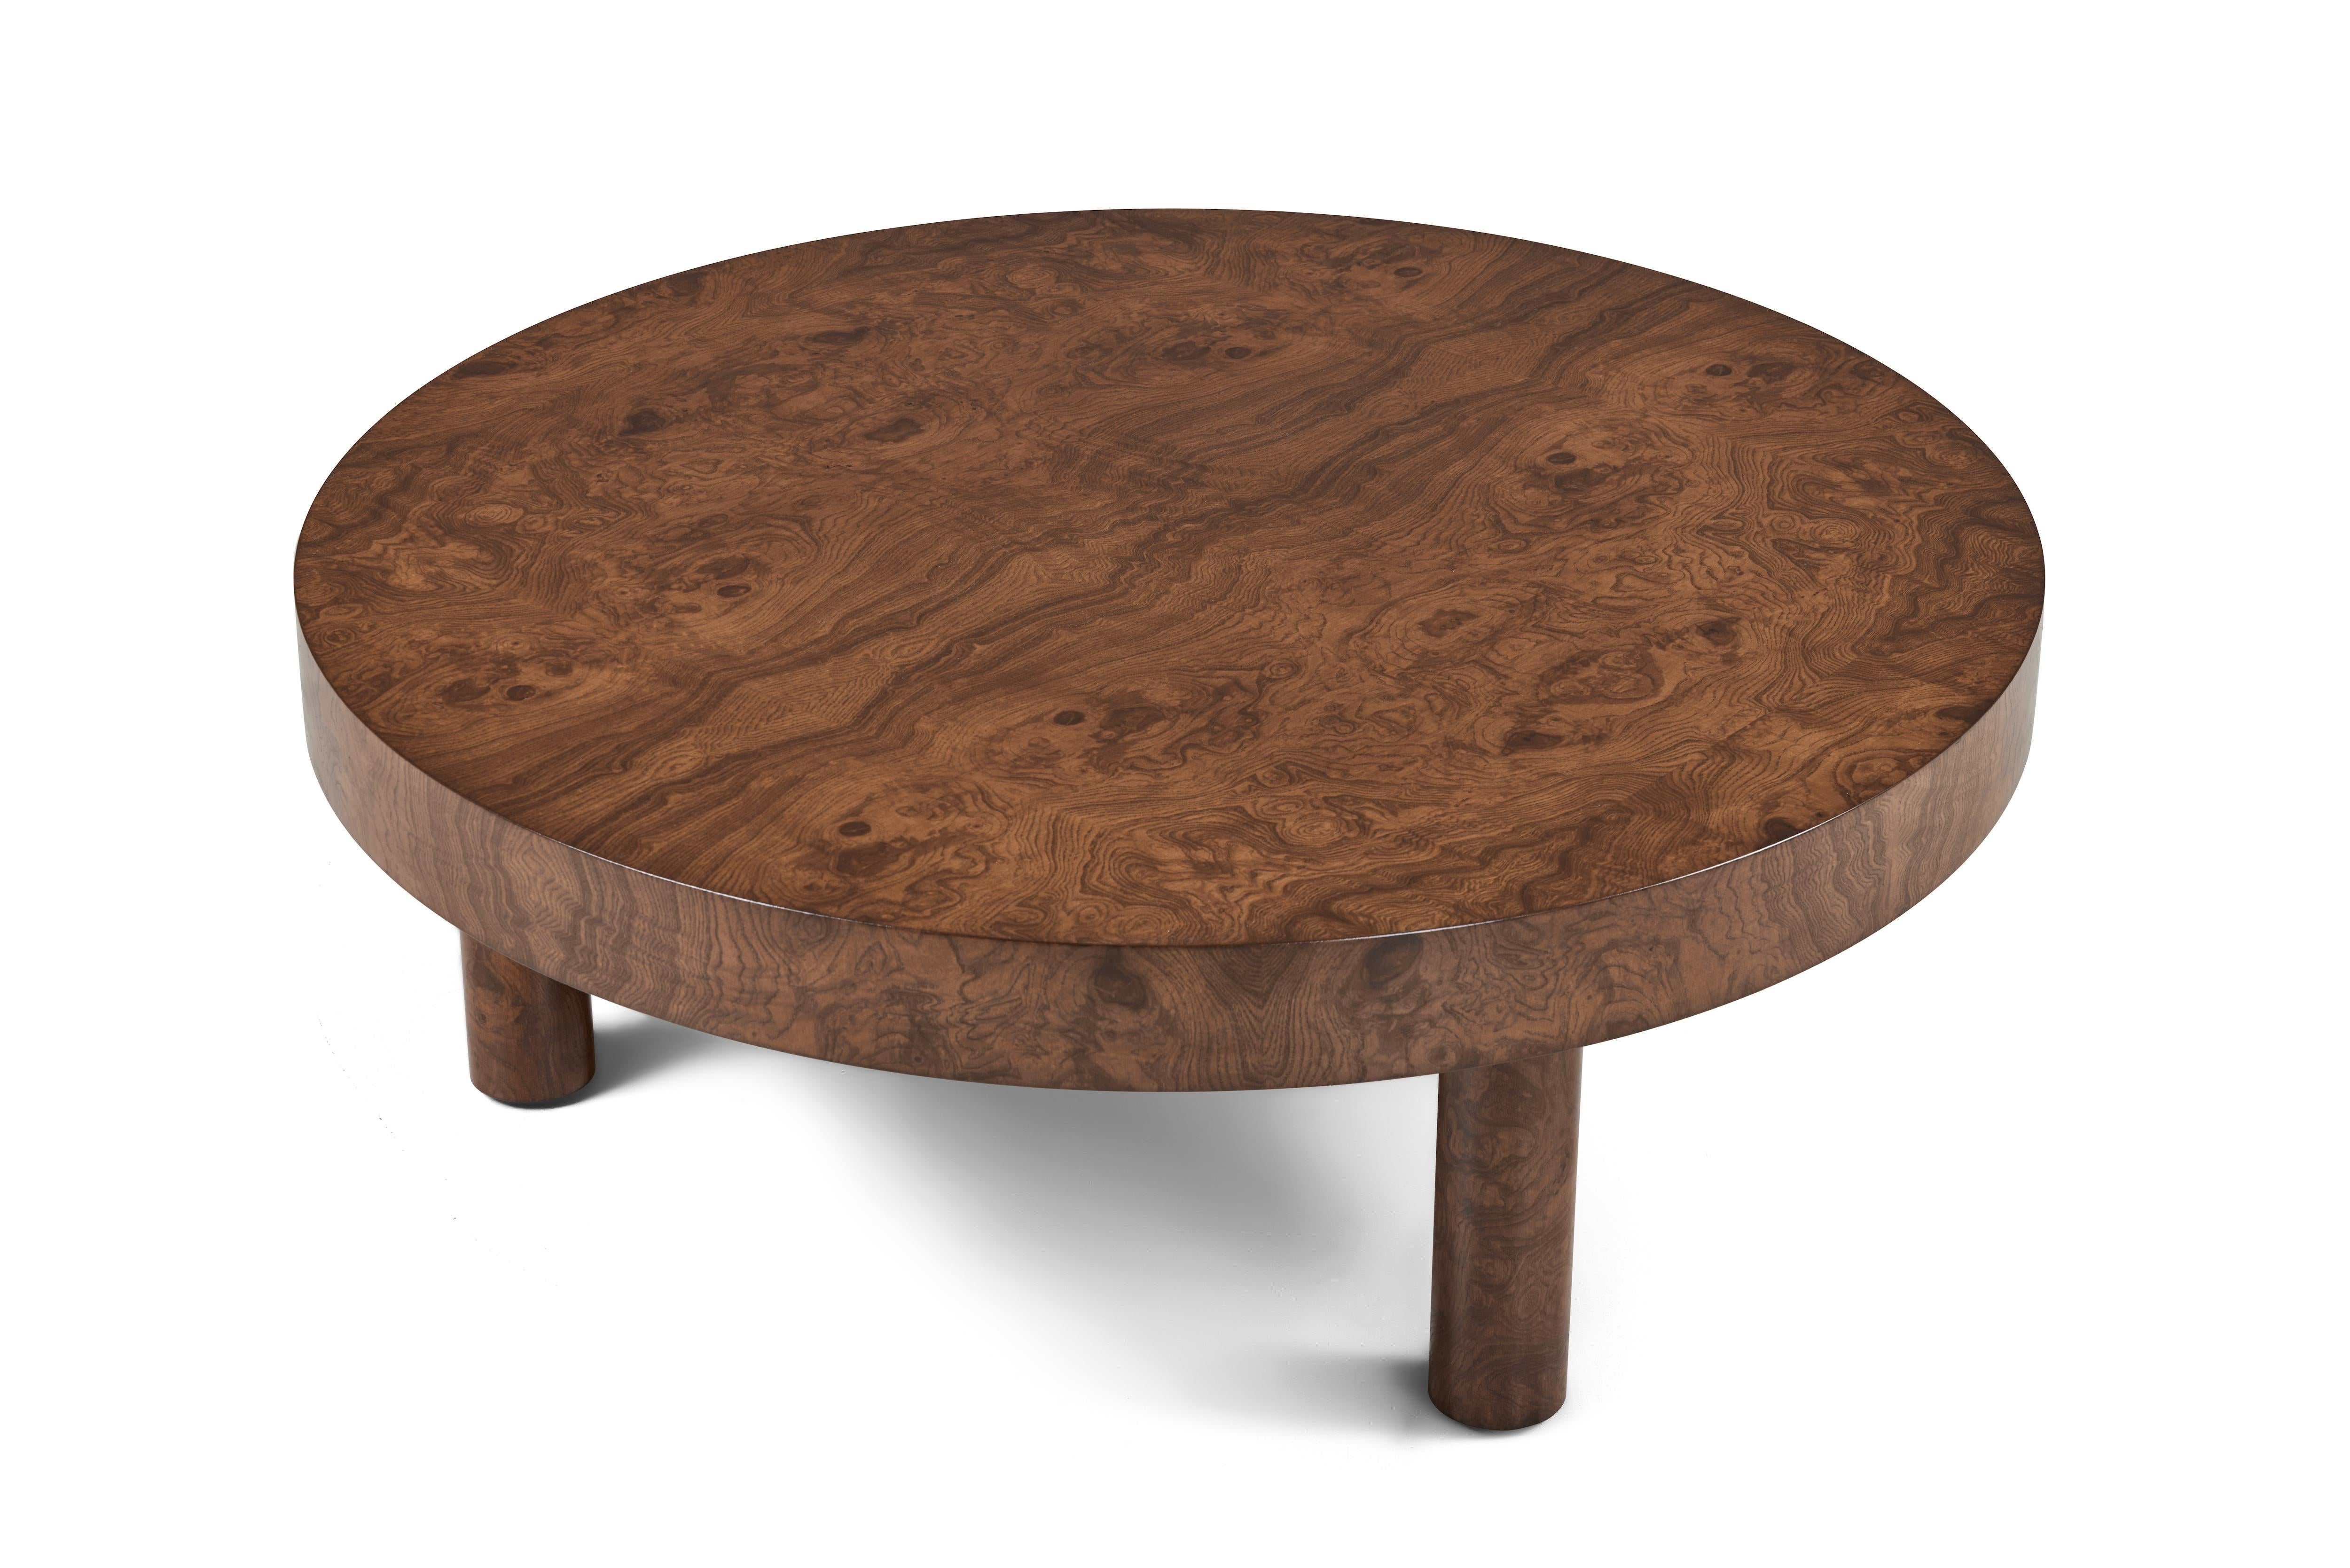 Des bois figuratifs et des lignes décontractées et épurées se combinent dans notre table Carlton, présentée ici dans notre finition Vintage By. 

Dimensions : 16